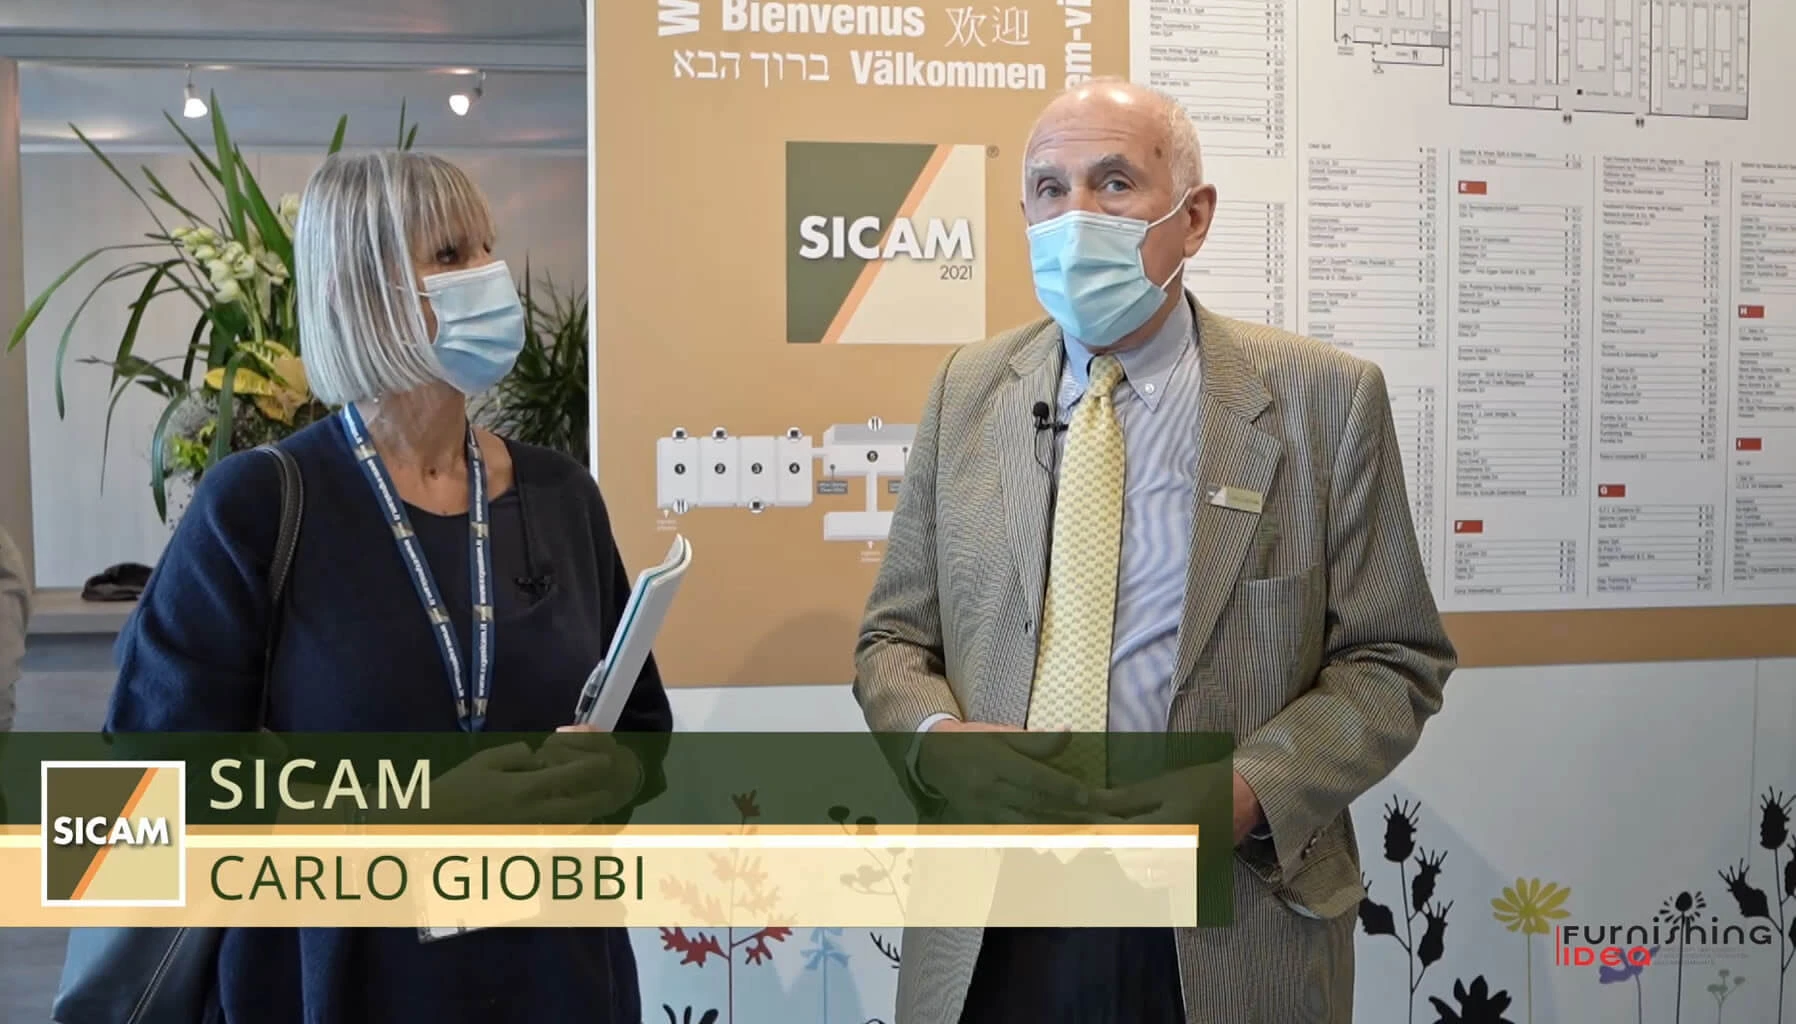 Sicam 2021: exklusives Interview mit Carlo Giobbi